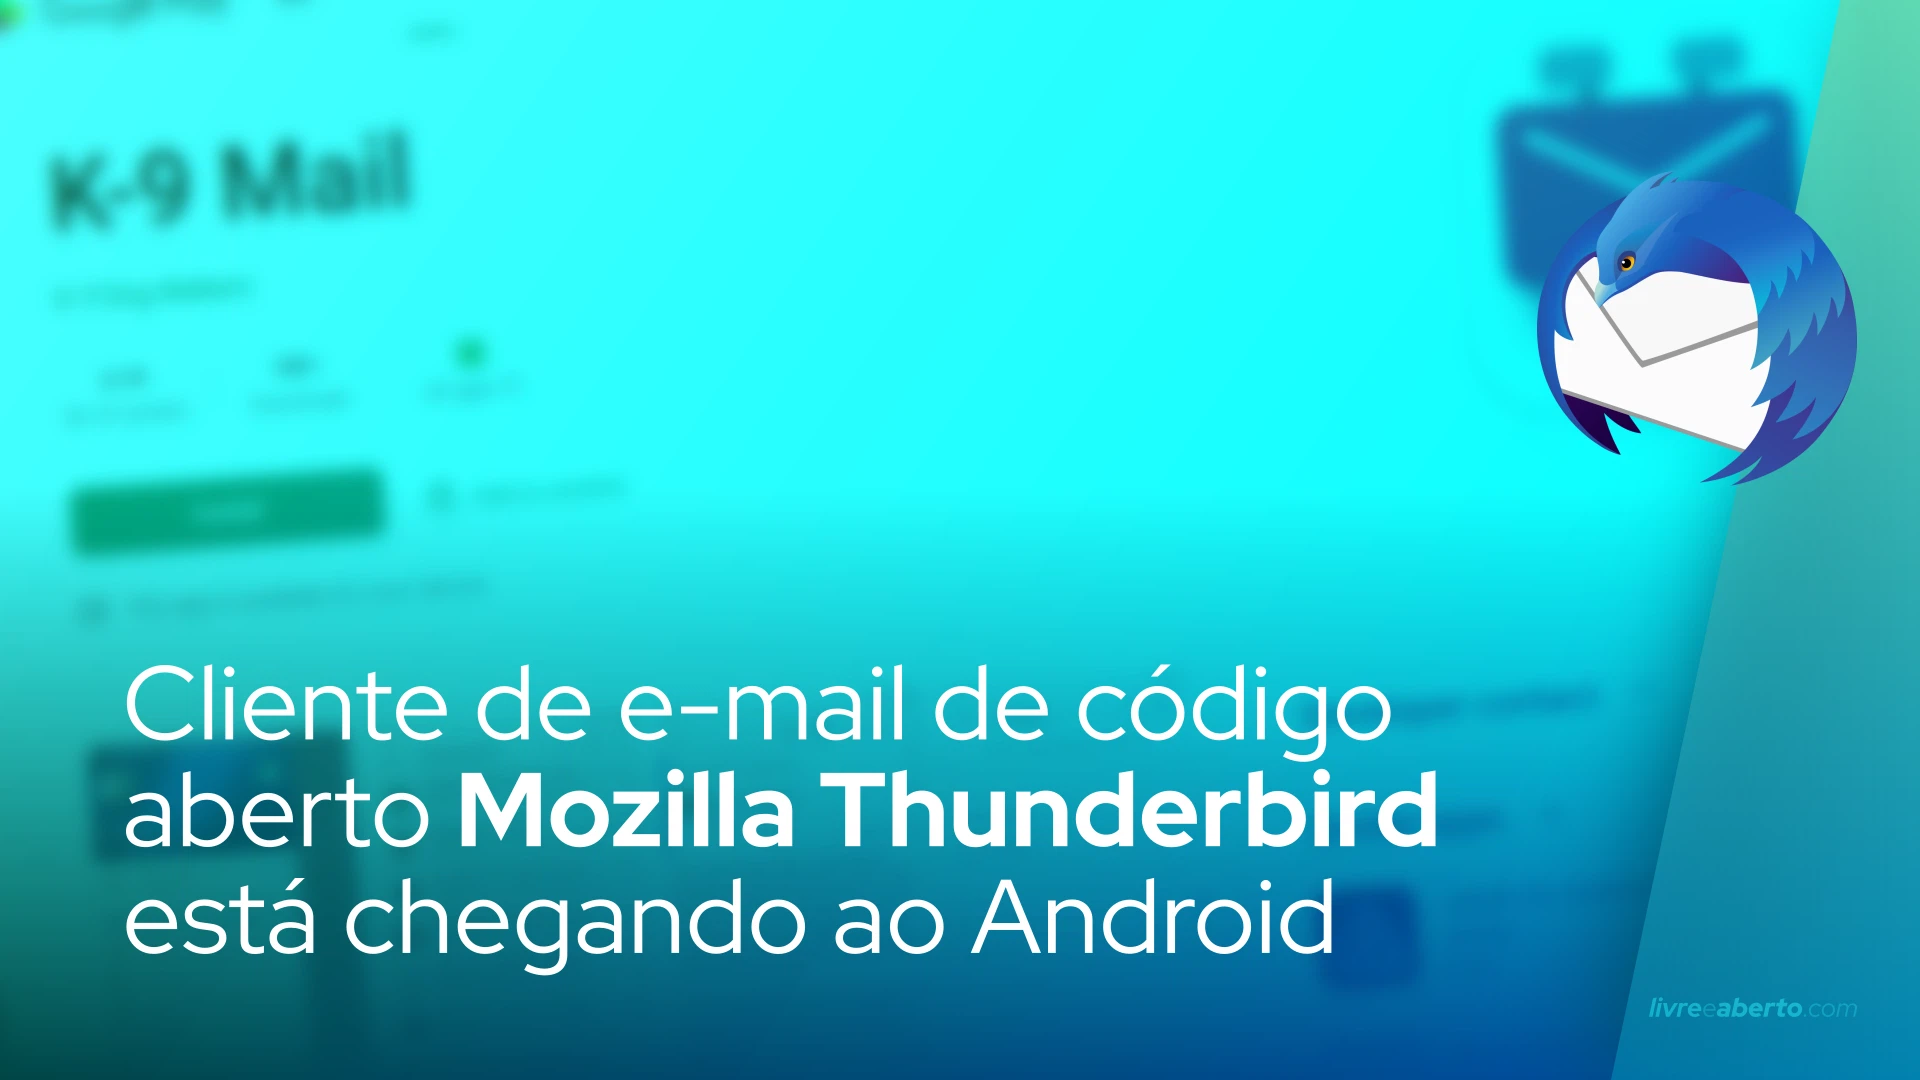 Cliente de e-mail de código aberto Mozilla Thunderbird está chegando a dispositivos Android